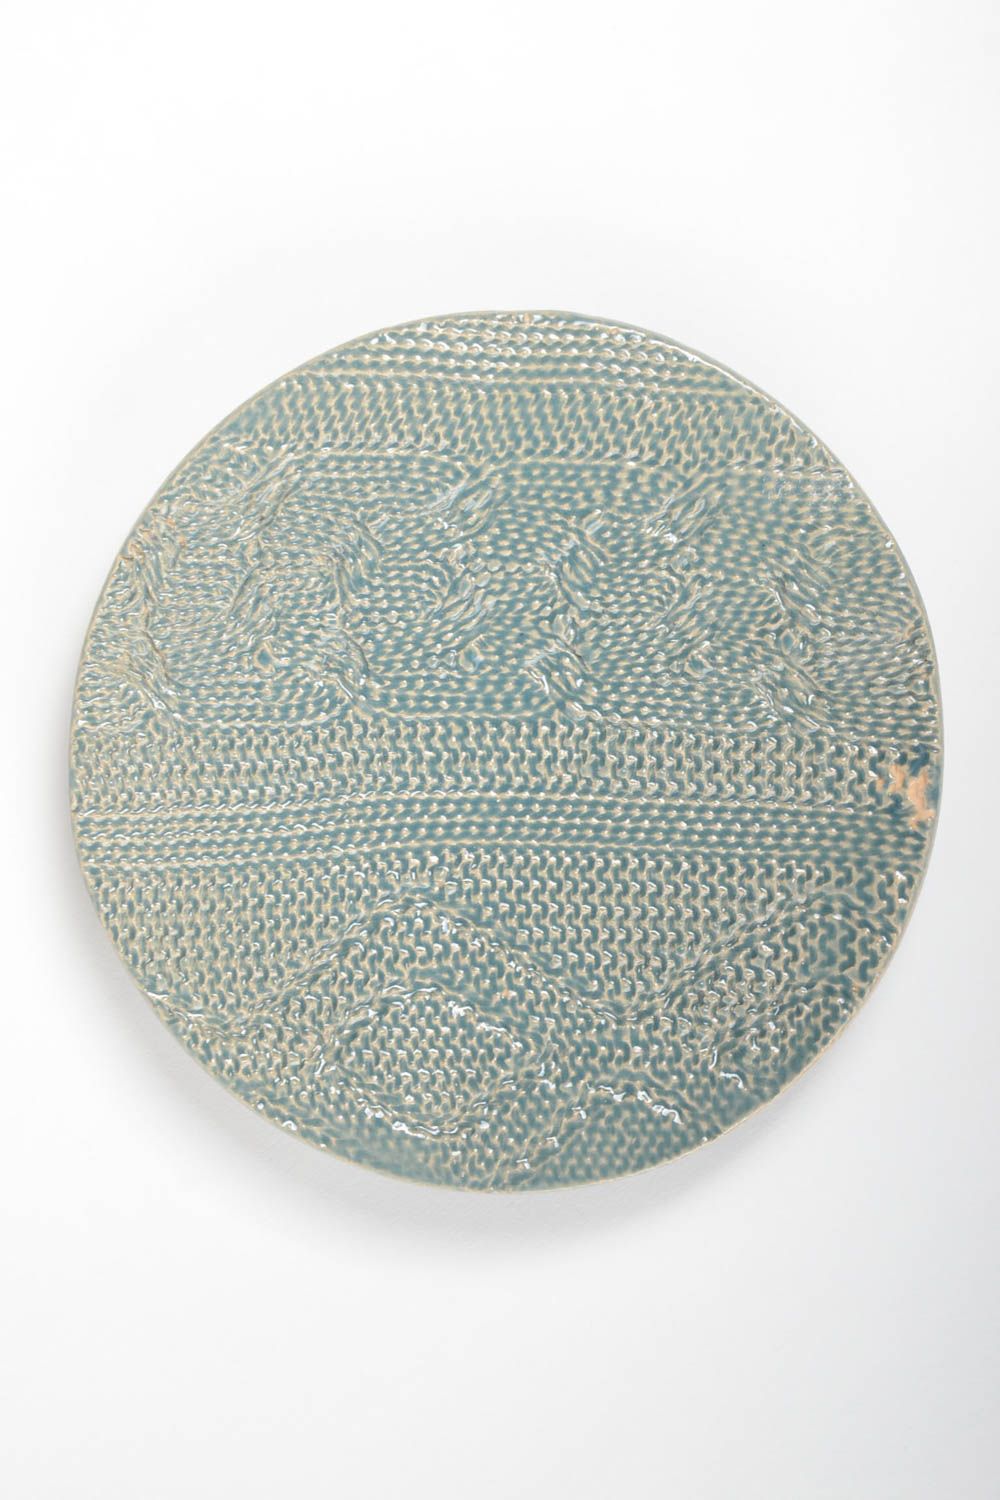 Необычная тарелка из глины круглая голубая с имитацией вязки ручная работа фото 2